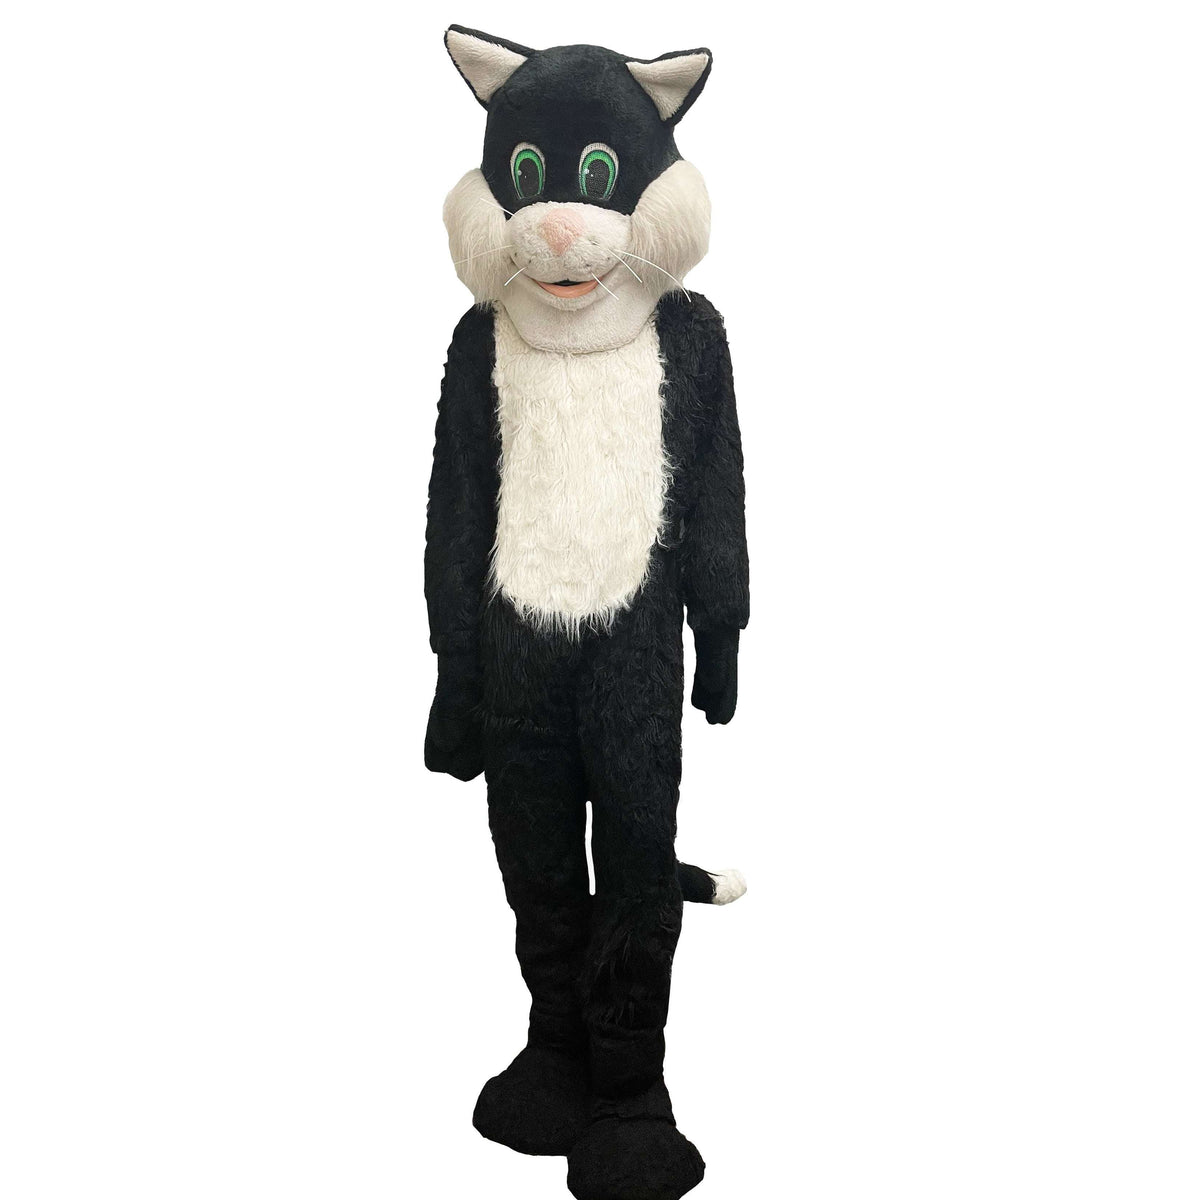 Blissful Black Cat Mascot Adult Costume